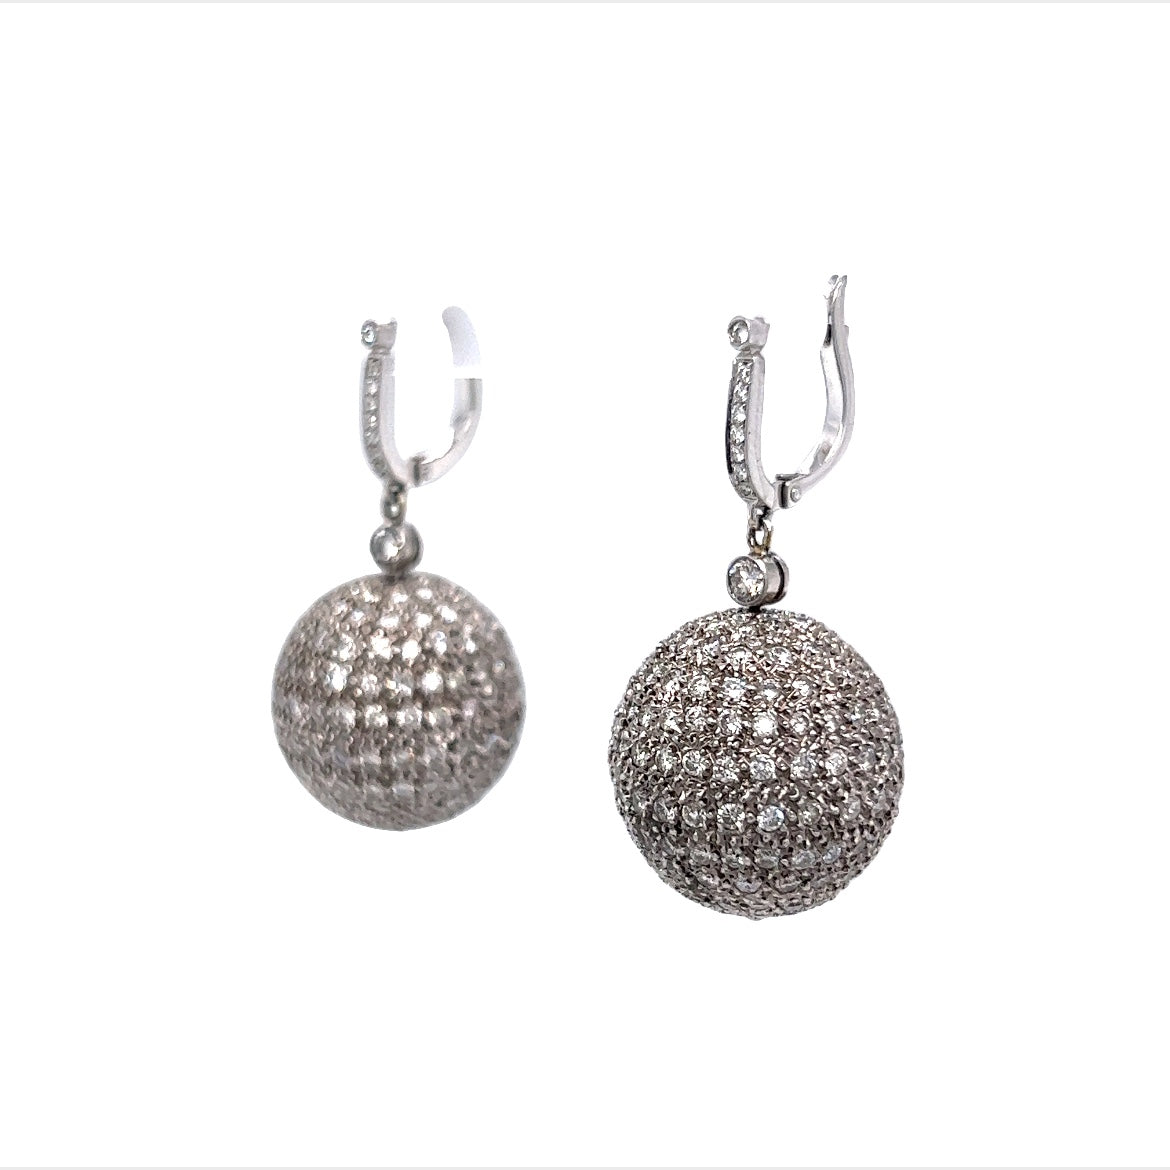 8 Carat Diamond Ball Earrings in 18k White Gold